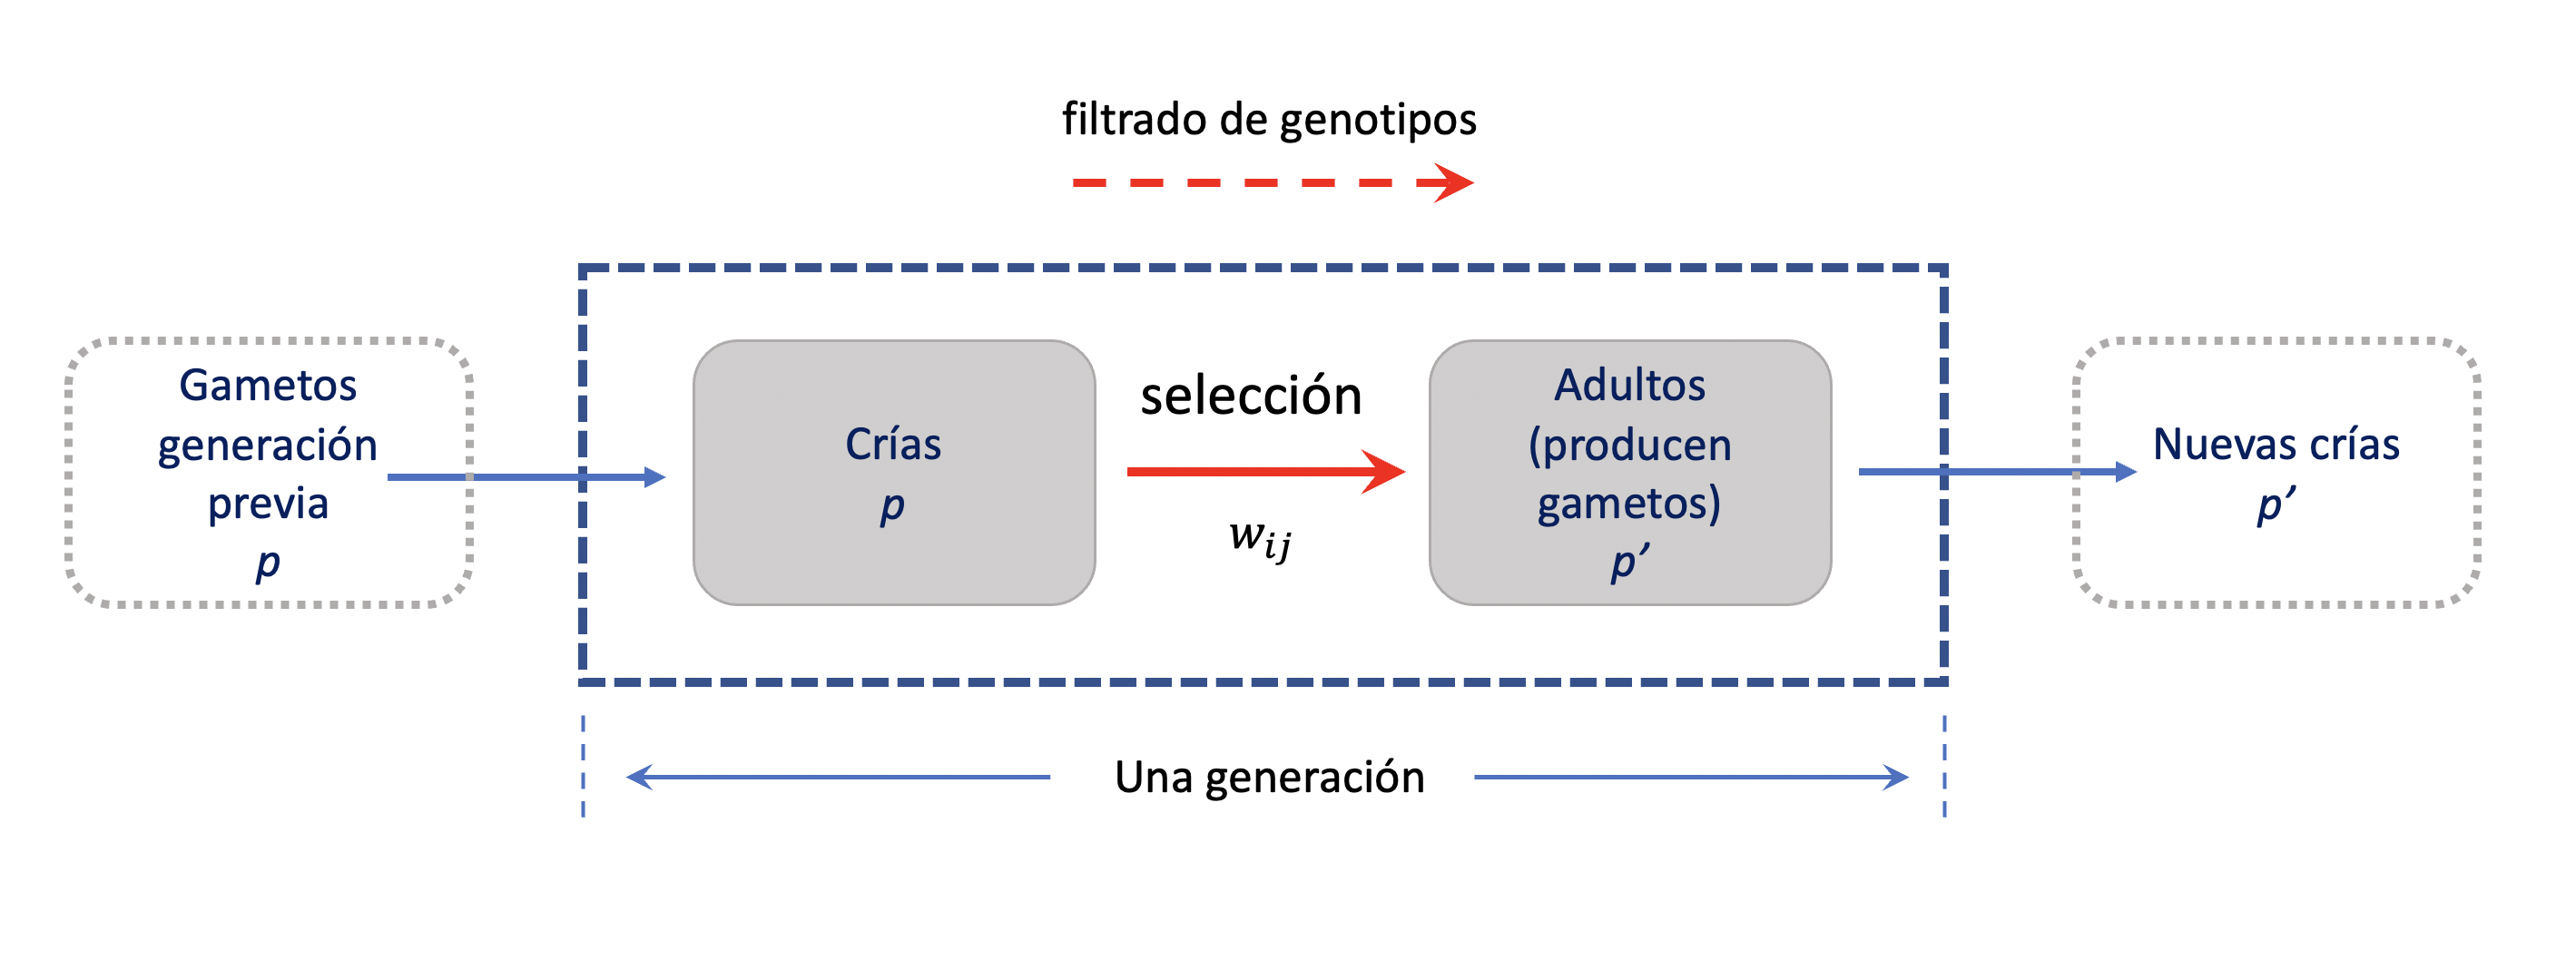 Modelo fundamental utilizado para estudiar la selección en un locus con dos alelos. Los gametos de la generación anterior (frecuencia \(p\)) producirán las crías de la generación presente, que luego del proceso de selección determinarán que adultos participarán del nuevo pool gamético (con frecuencia \(p'\)). Elaboración propia sobre idea de John H. Gillespie (2004).